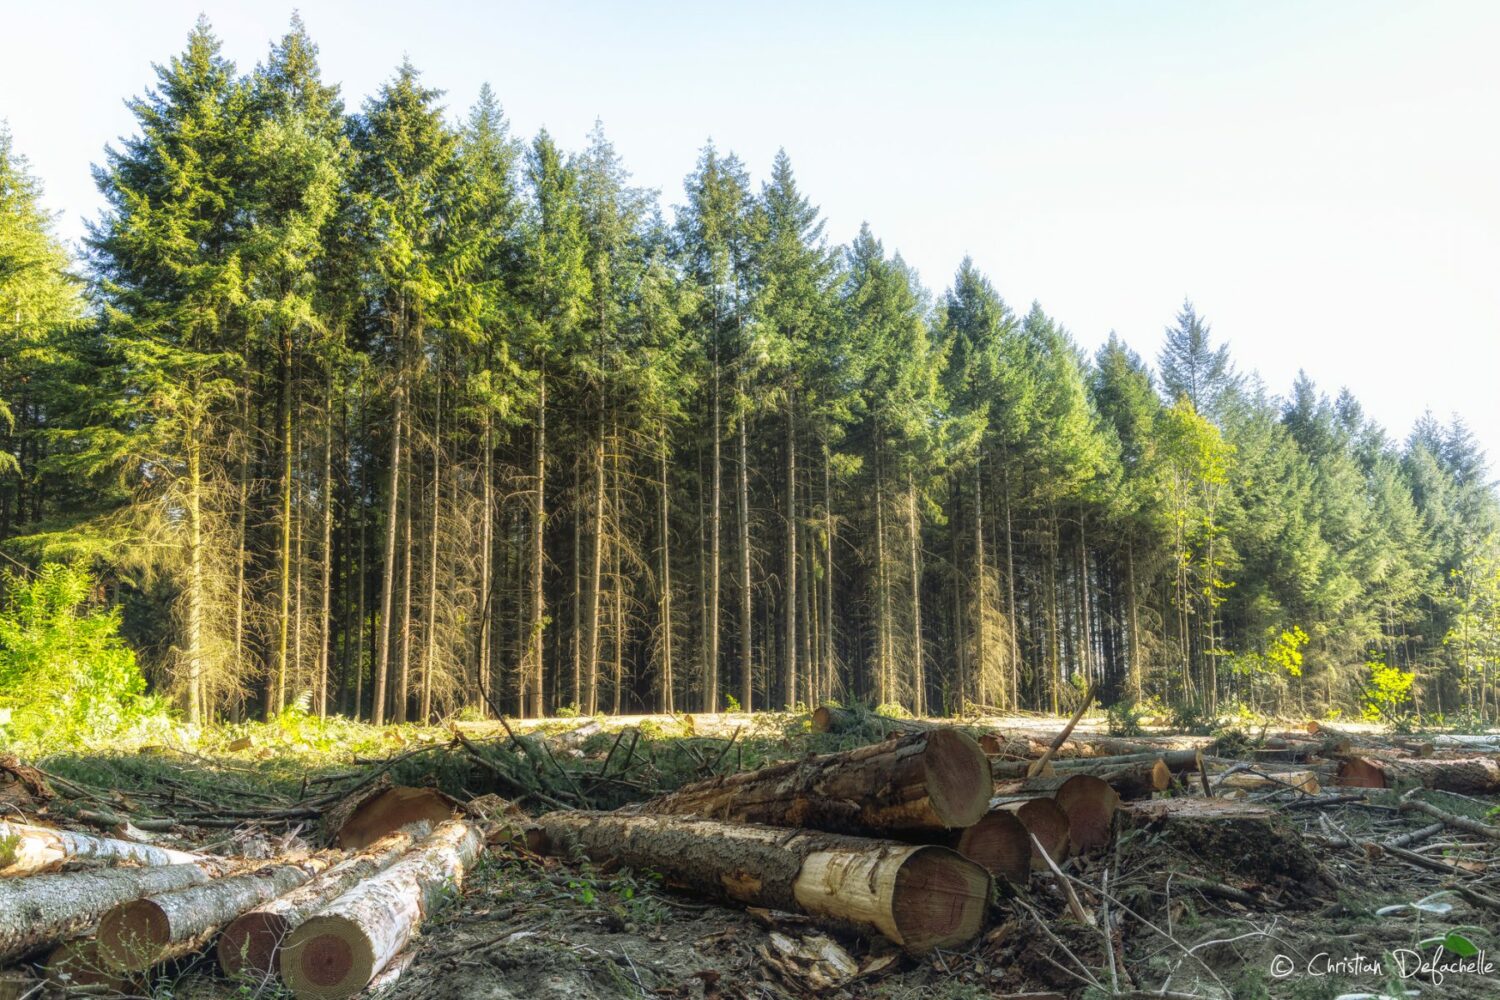 Pour une protection juridique des arbres hors forêt